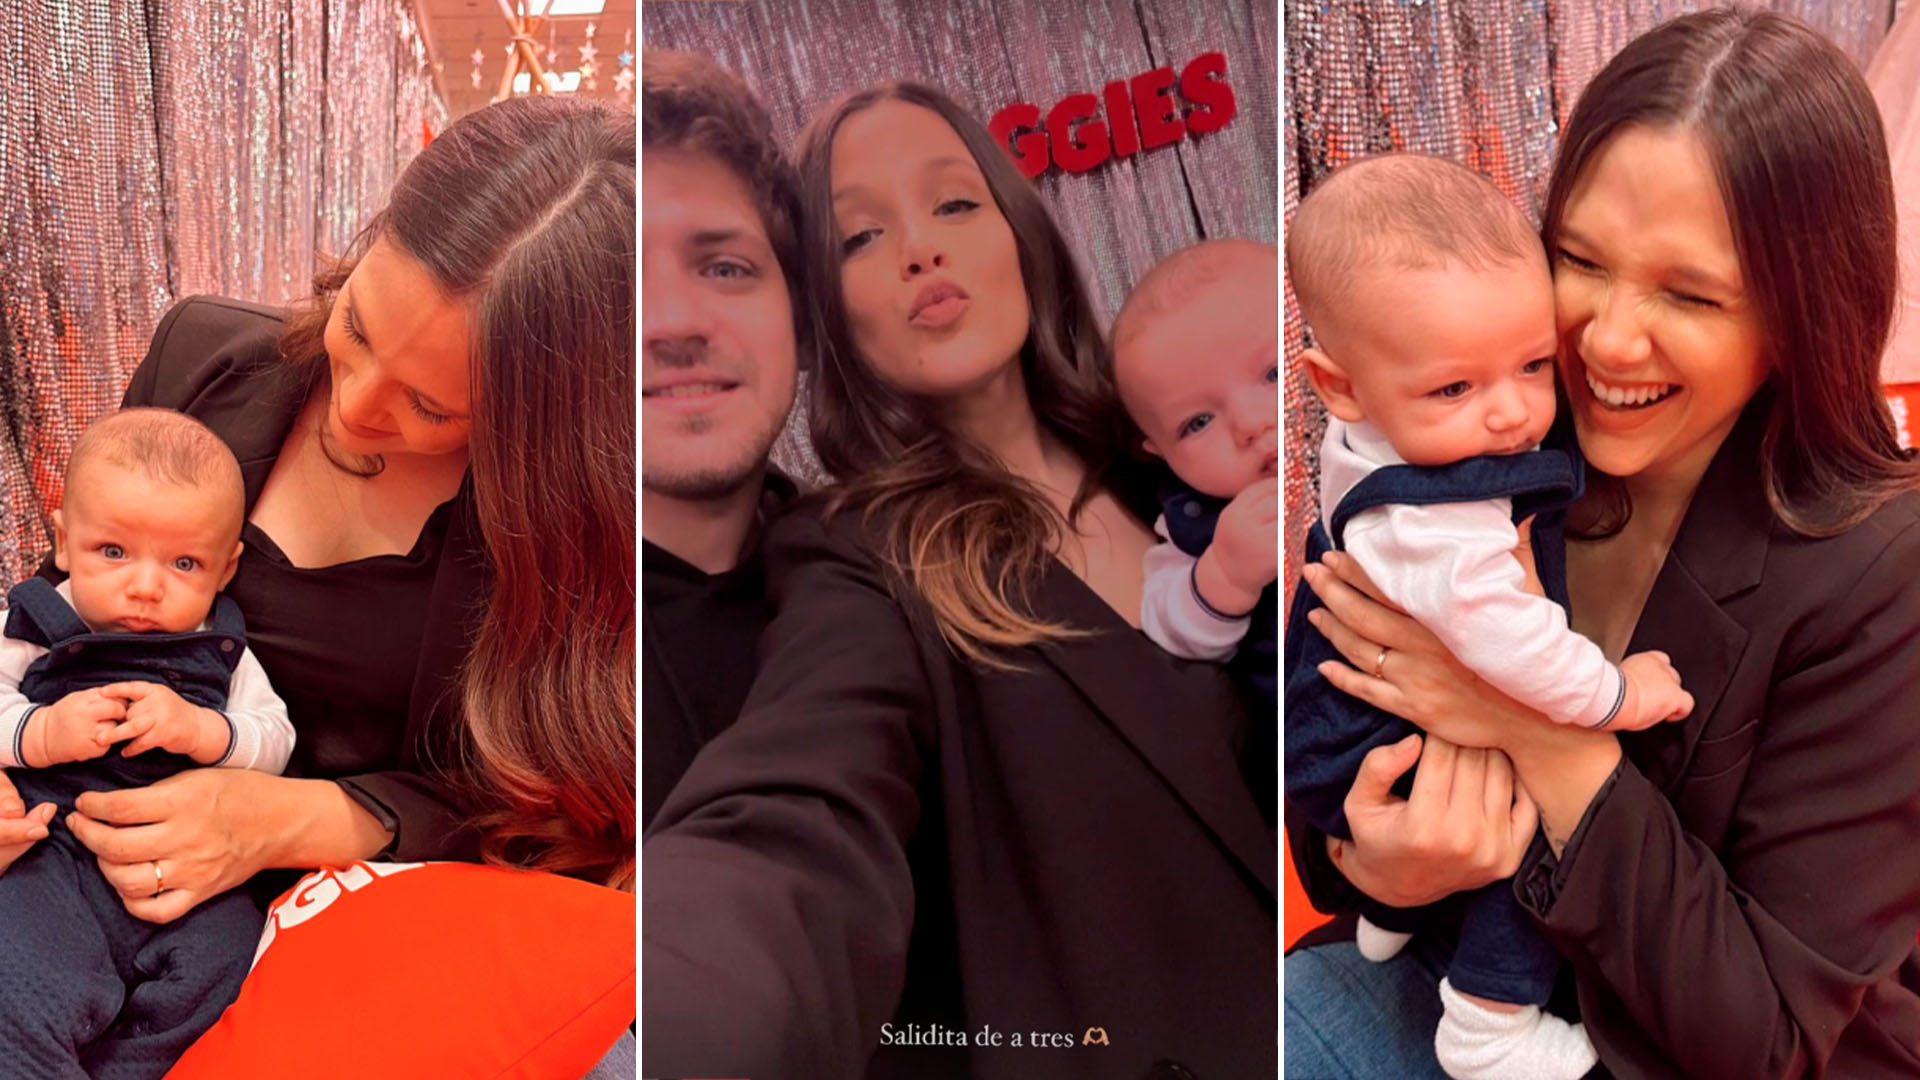 Barbie Vélez fue por primera vez a un evento con su bebé Salvador y Lucas Rodríguez: “Salidita de a tres”